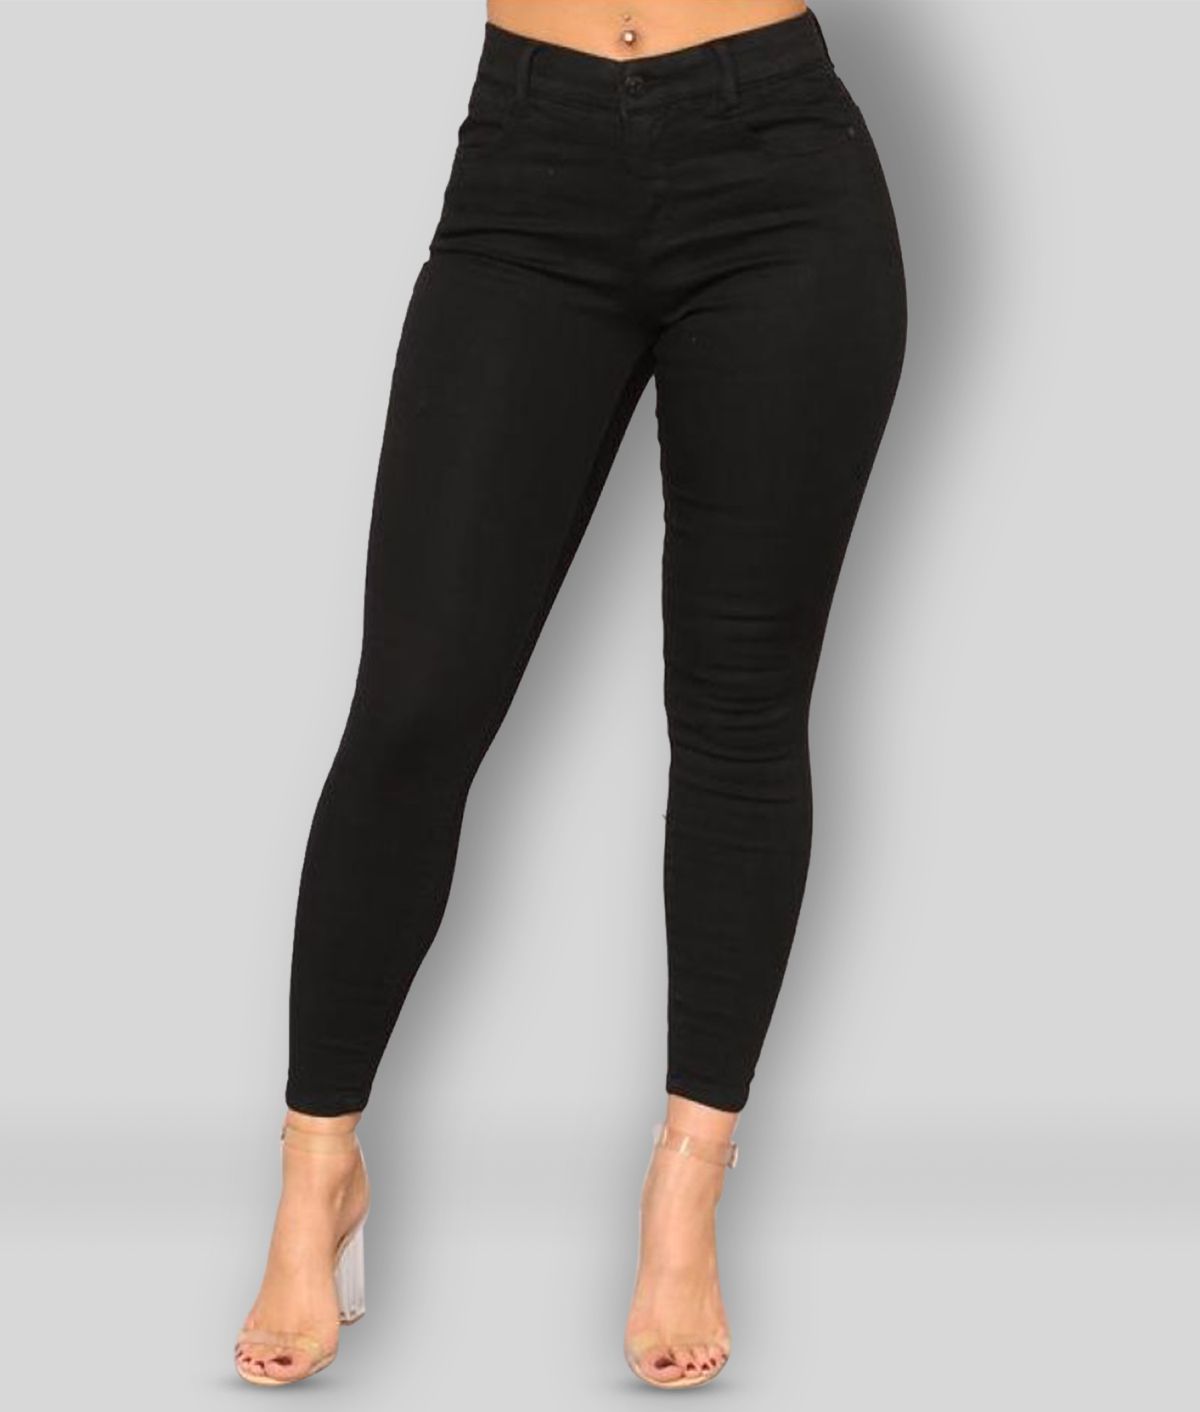 Broadstar - Black Denim Lycra Women's Jeans ( Pack of 1 )